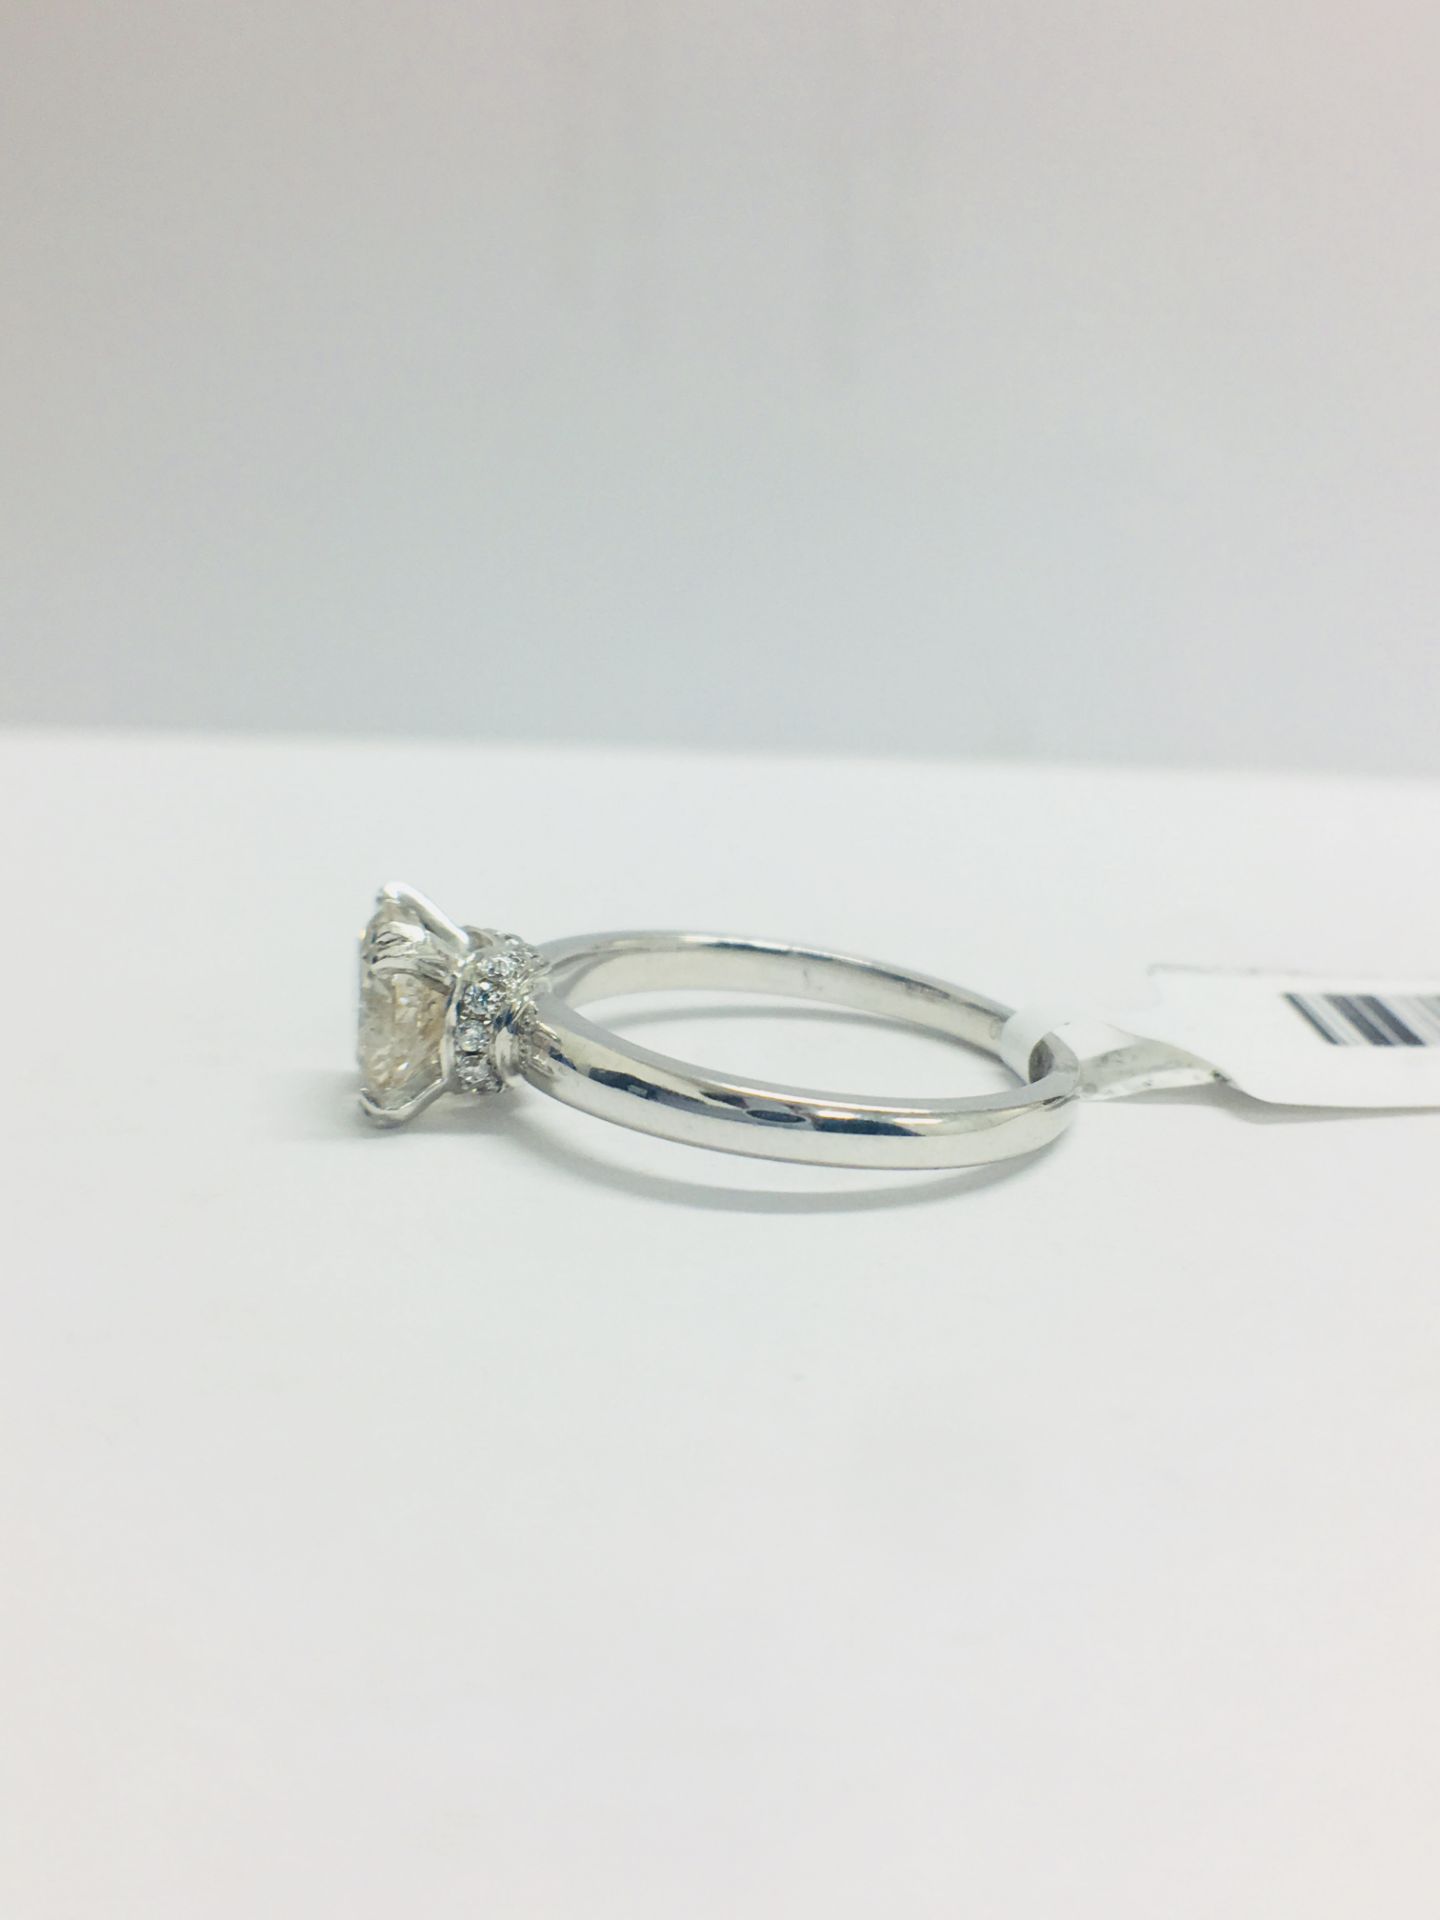 1ct Diamond Solitaire ring set in Platinum diamnd setting - Image 4 of 13